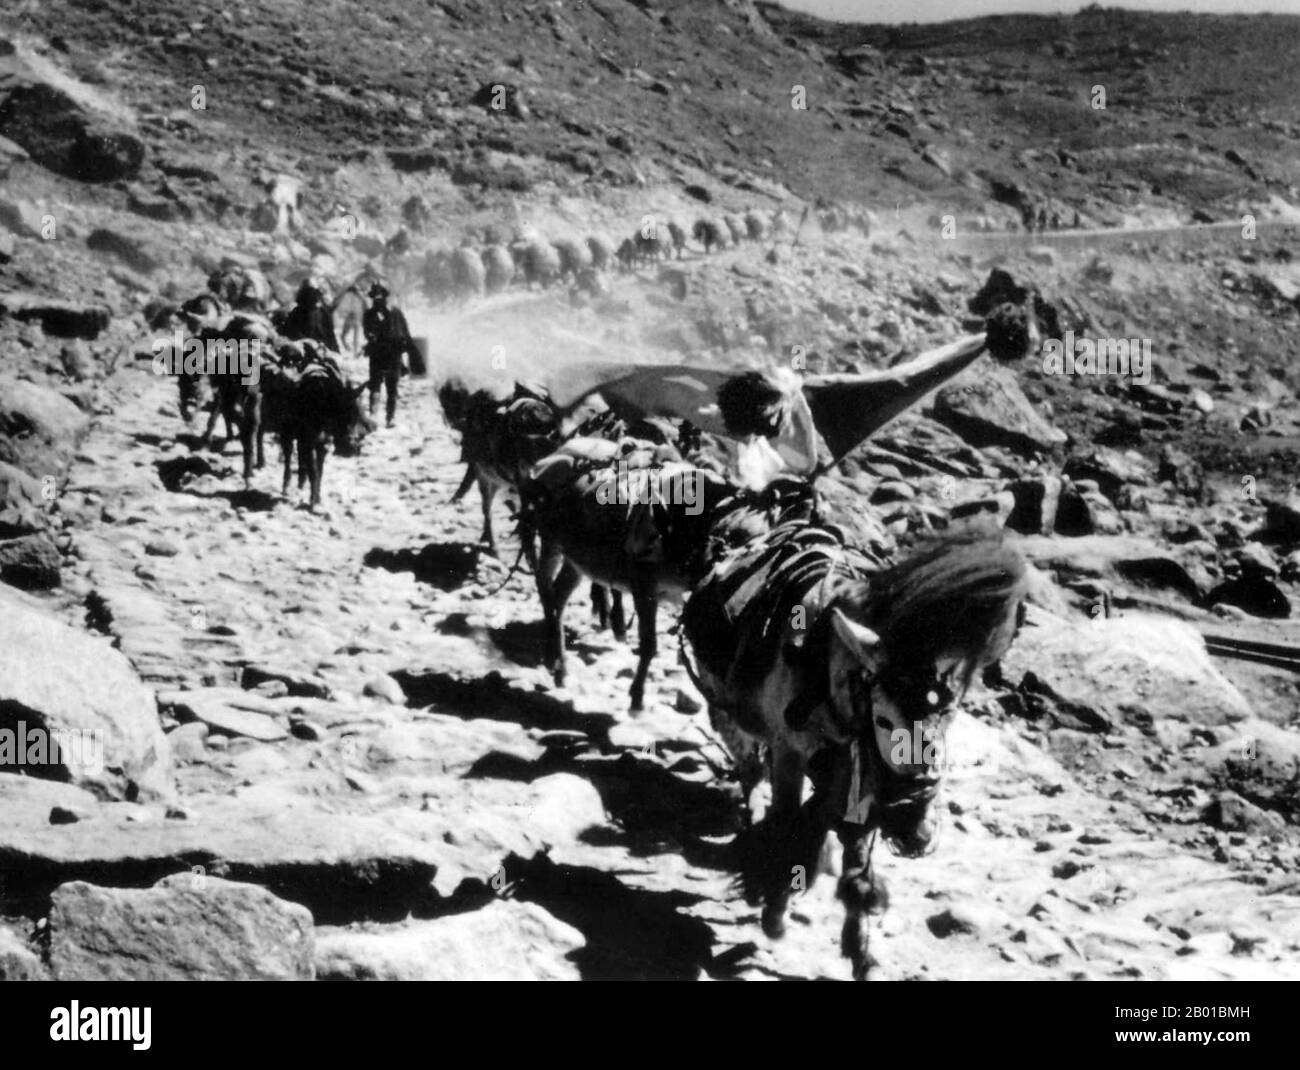 Indien/Sikkim: Eine Maultier-Karawane aus Tibet kommt über den Nathu La Pass, 1930s, nach Sikkim. Nathu La (chinesisch: Nǎiduīlā Shānkǒu) ist ein Gebirgspass im Himalaya. Es verbindet den indischen Staat Sikkim mit Chinas Autonomer Region Tibet. Der Pass, der 4.310 m (14.140 ft) über dem mittleren Meeresspiegel liegt, ist Teil eines Ableger der alten Tea Horse Road. Nathu bedeutet „Ohren hören“ und La bedeutet auf Tibetisch „Pass“. Es wird auch Ntula, Natu La, Natula oder Natula geschrieben. Nathu La ist einer der drei Handelsgrenzposten zwischen China und Indien. Stockfoto